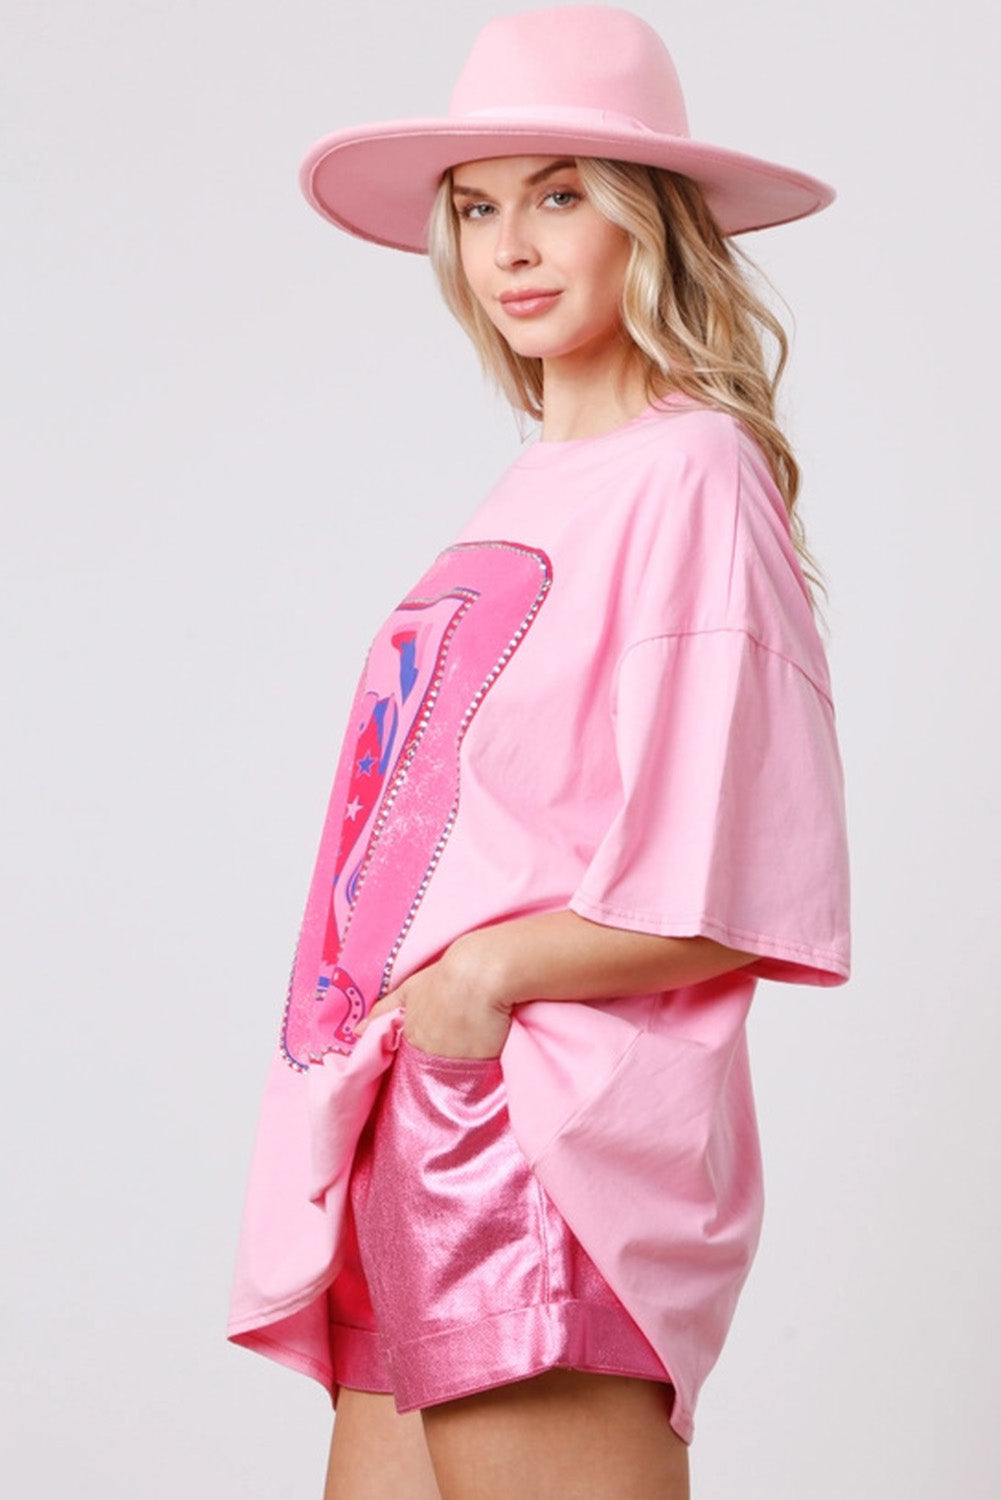 T-shirt graphique Western avec carte de bottes de cow-girl rose